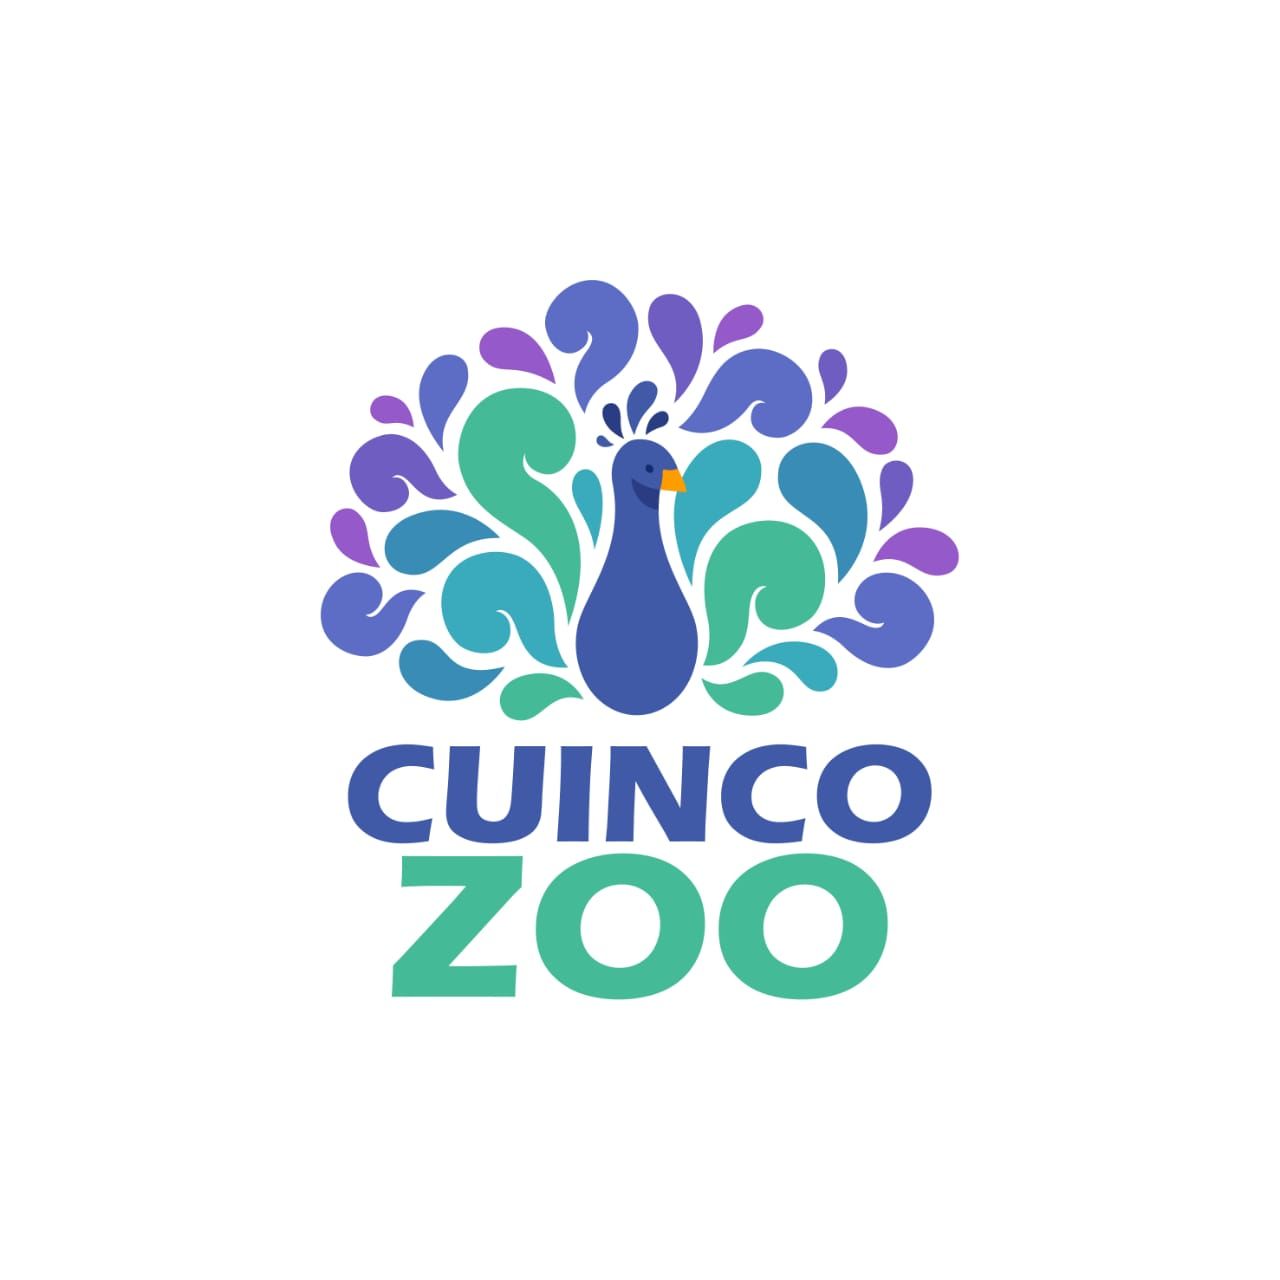 CuincoZoo 